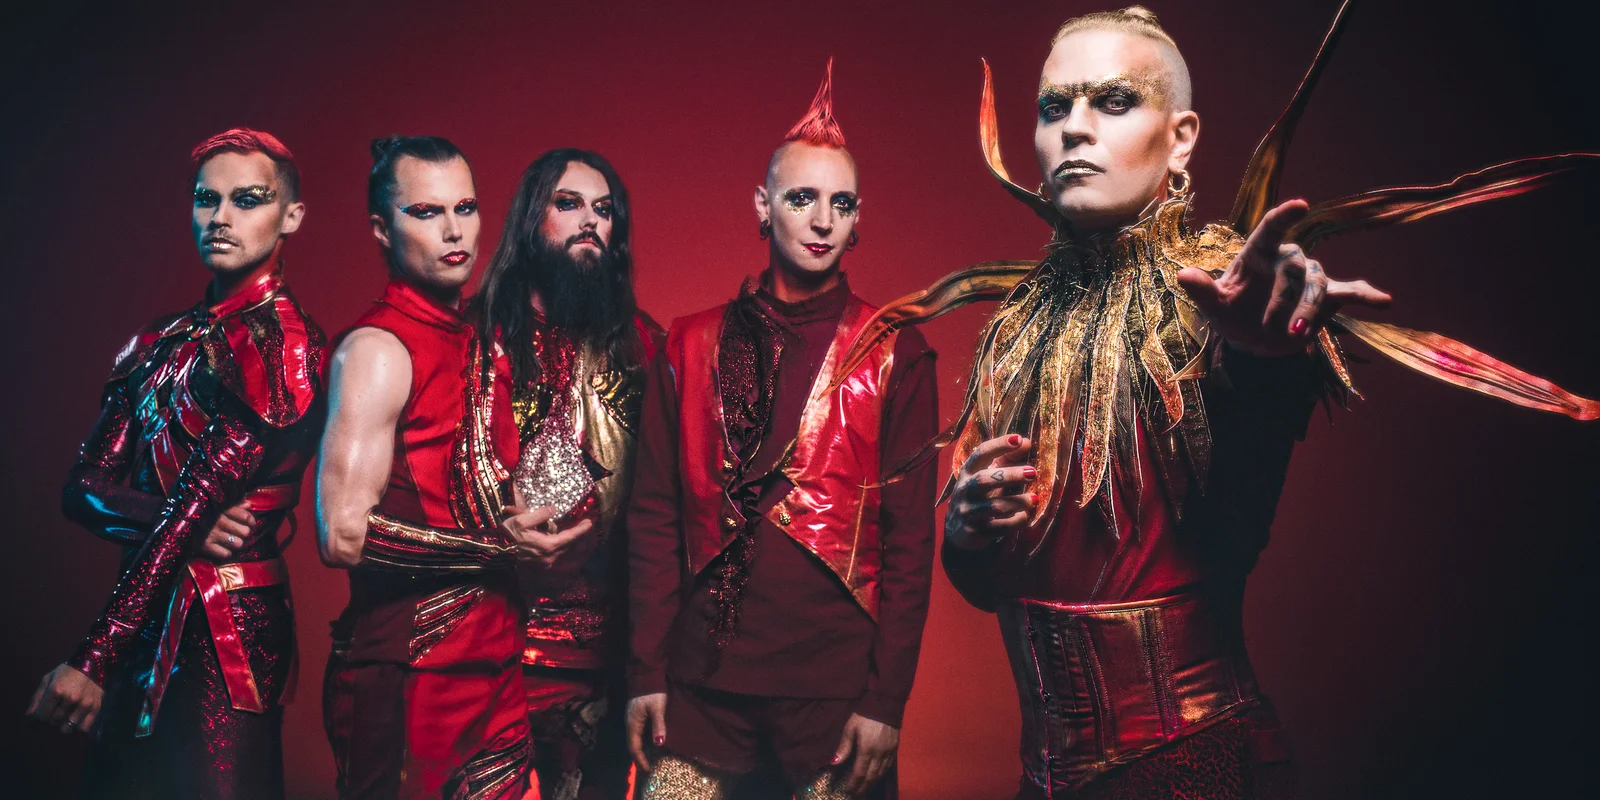 Die Bandmitglieder von Lord of the Lost vor rotem Hintergrund in rot-goldenen Kostümen.